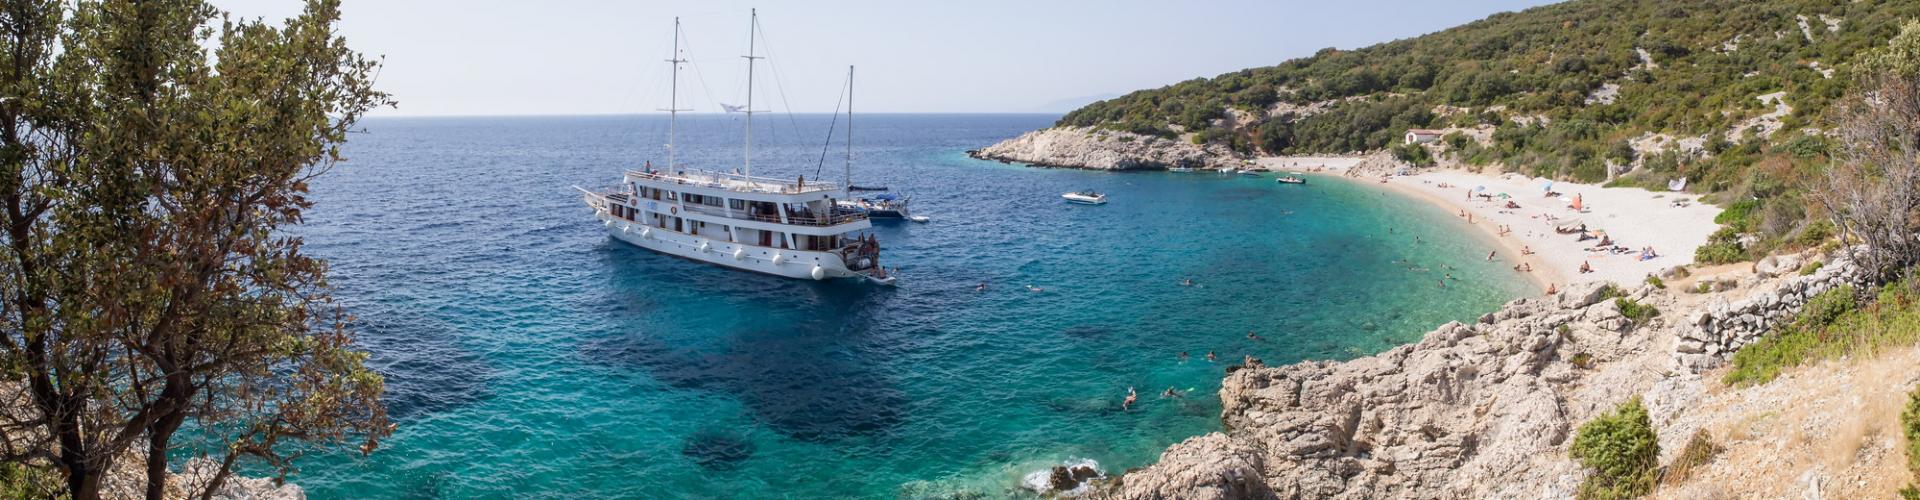 2011. Premium Kreuzfahrtschiff MV Dalmatia